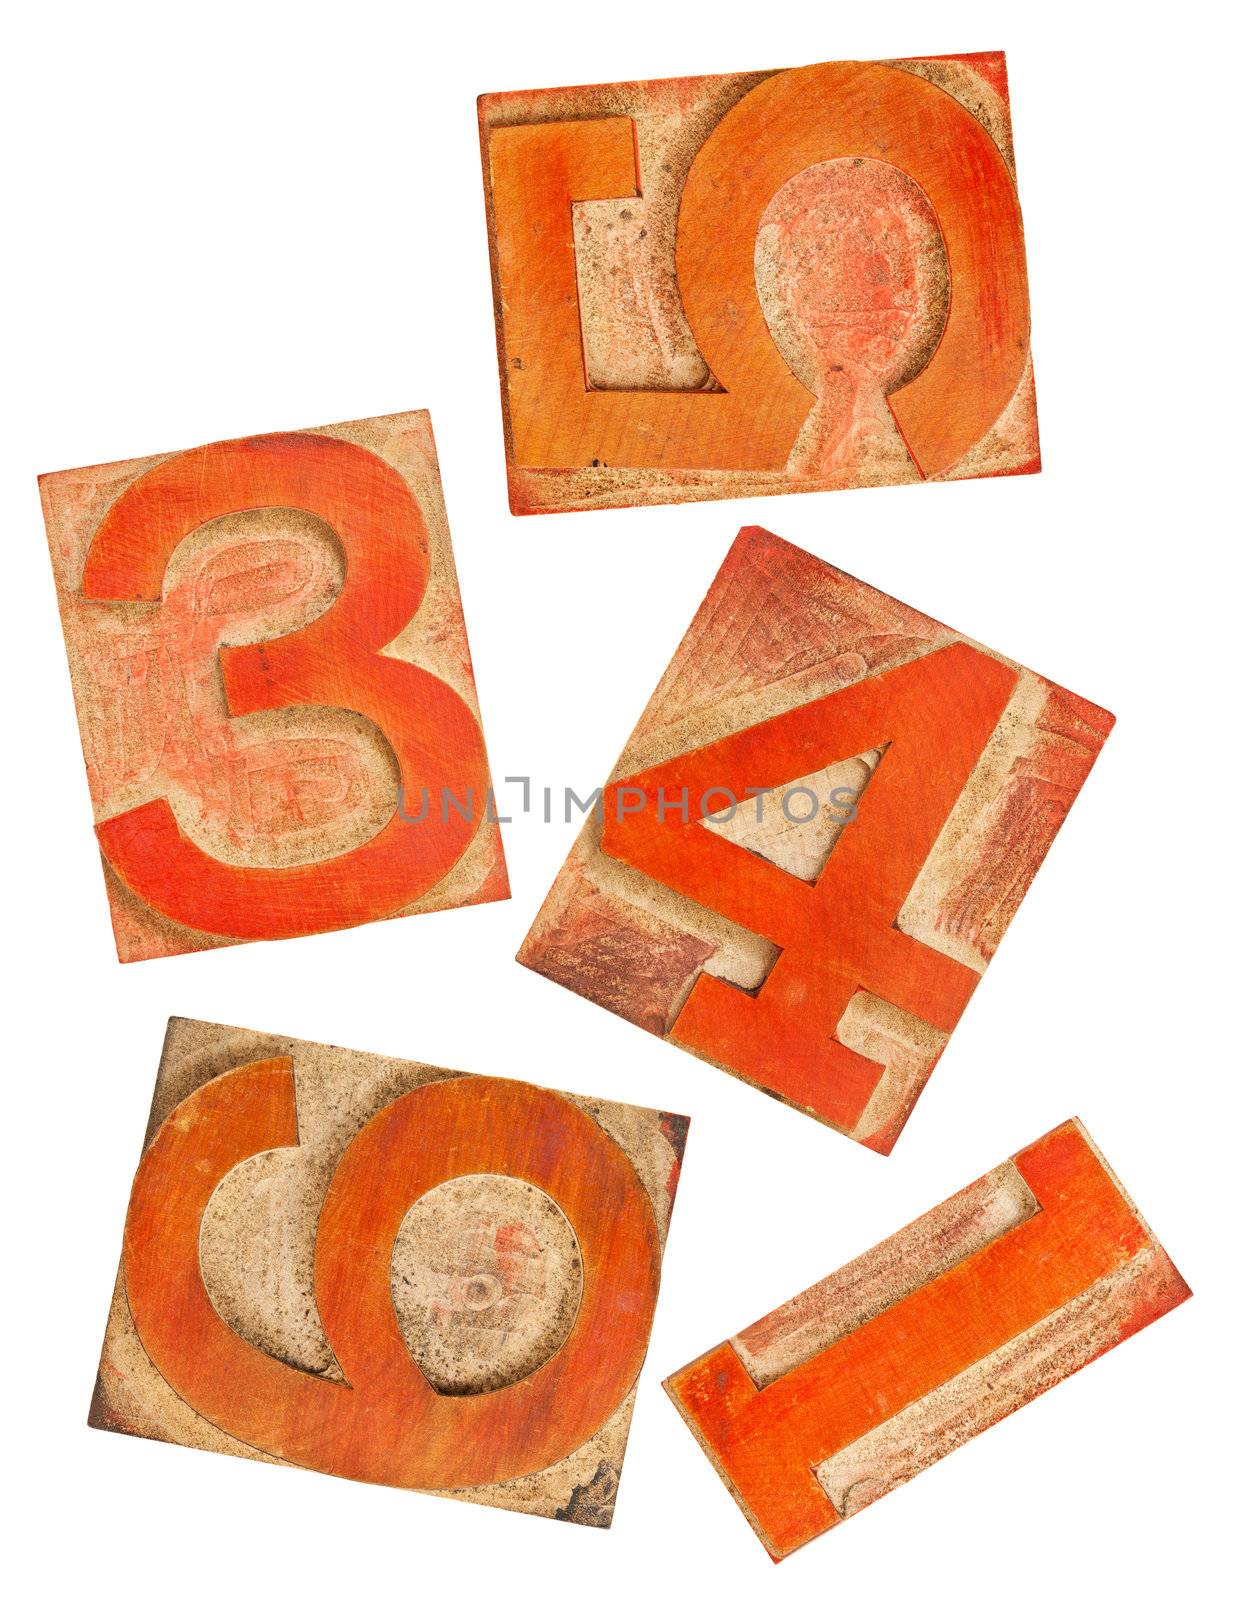 red orange numbers in wood type by PixelsAway